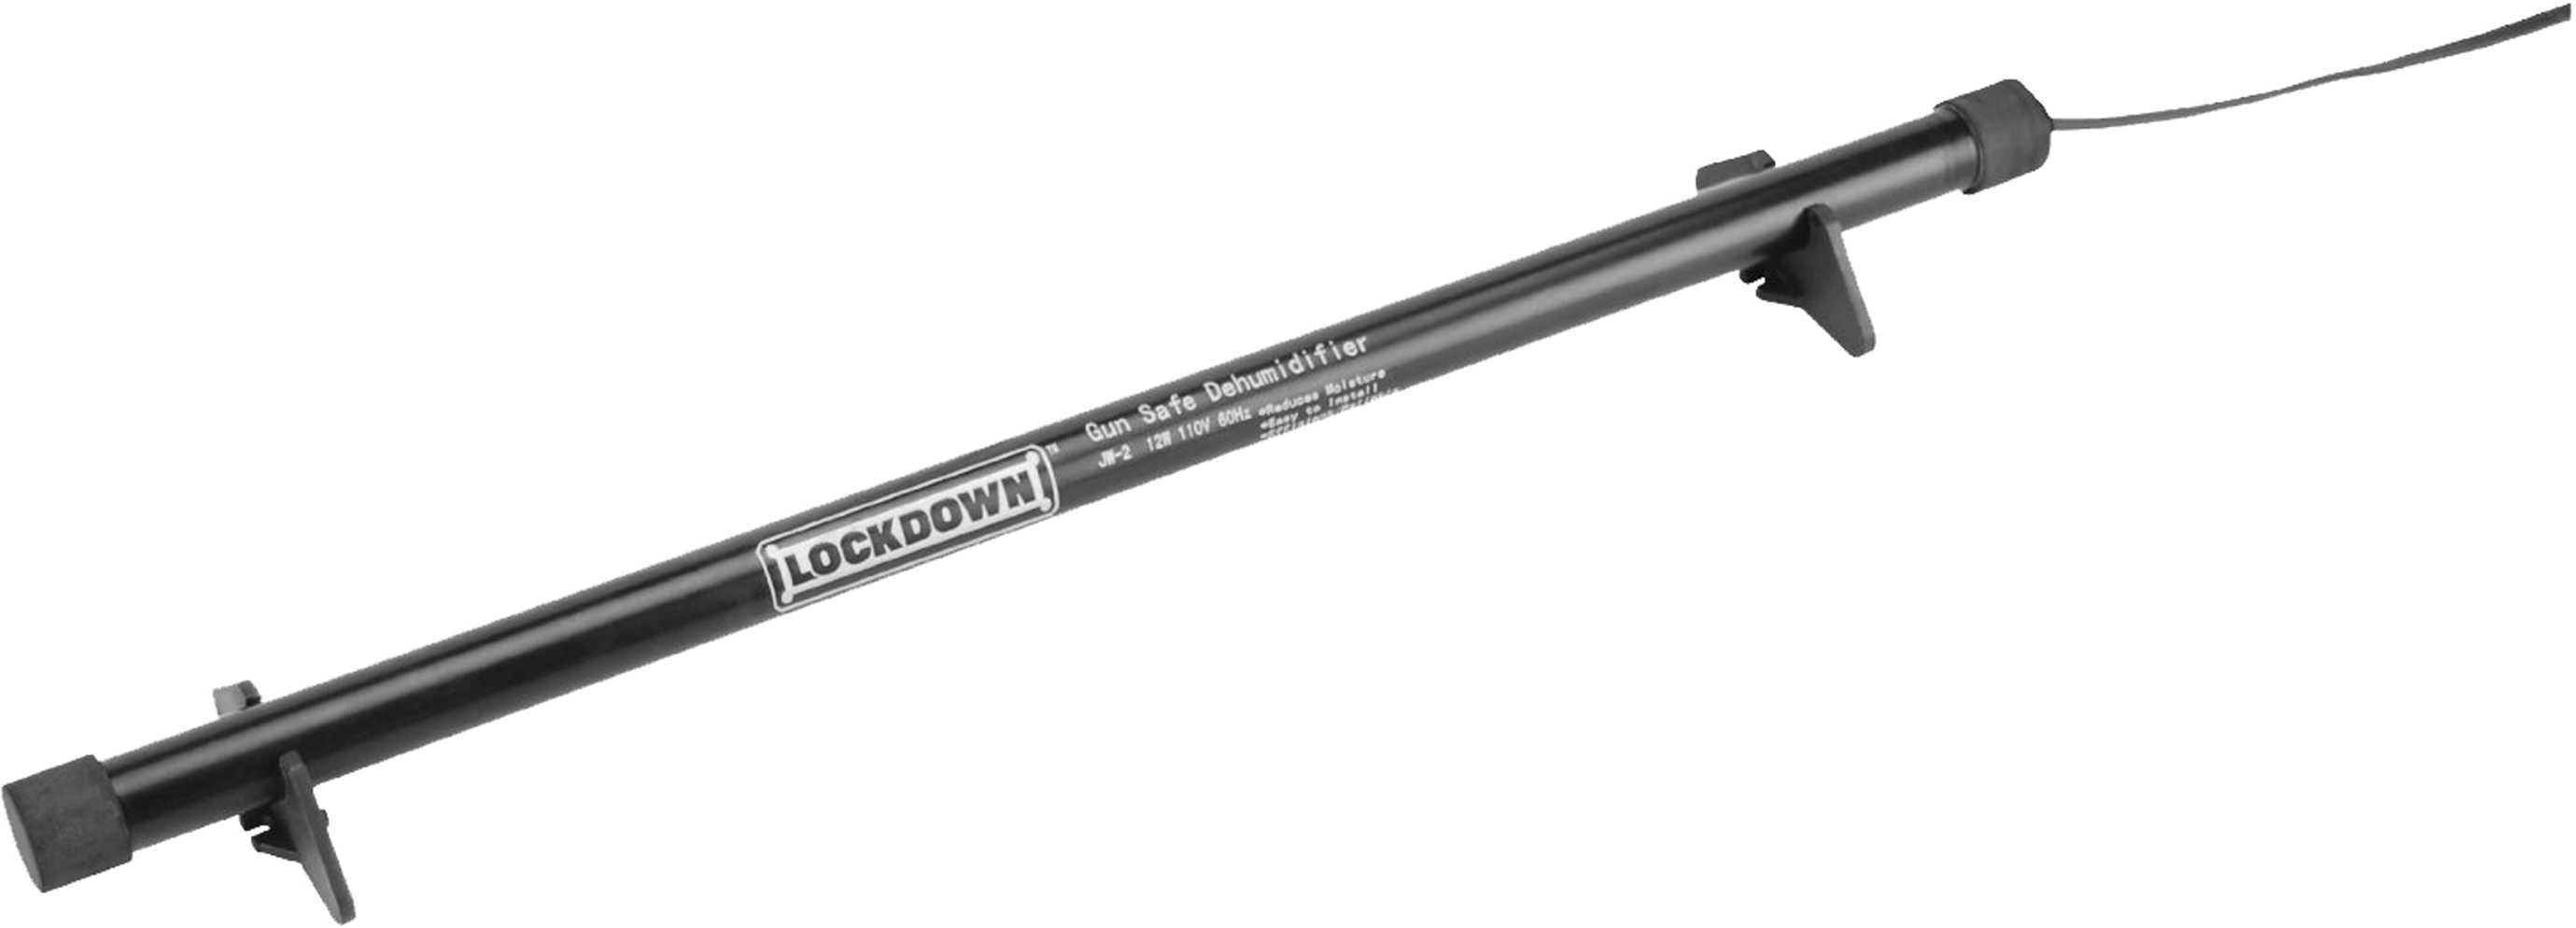 Lockdown Dehumidifier Rod 18 in for GunSafe Model 222010